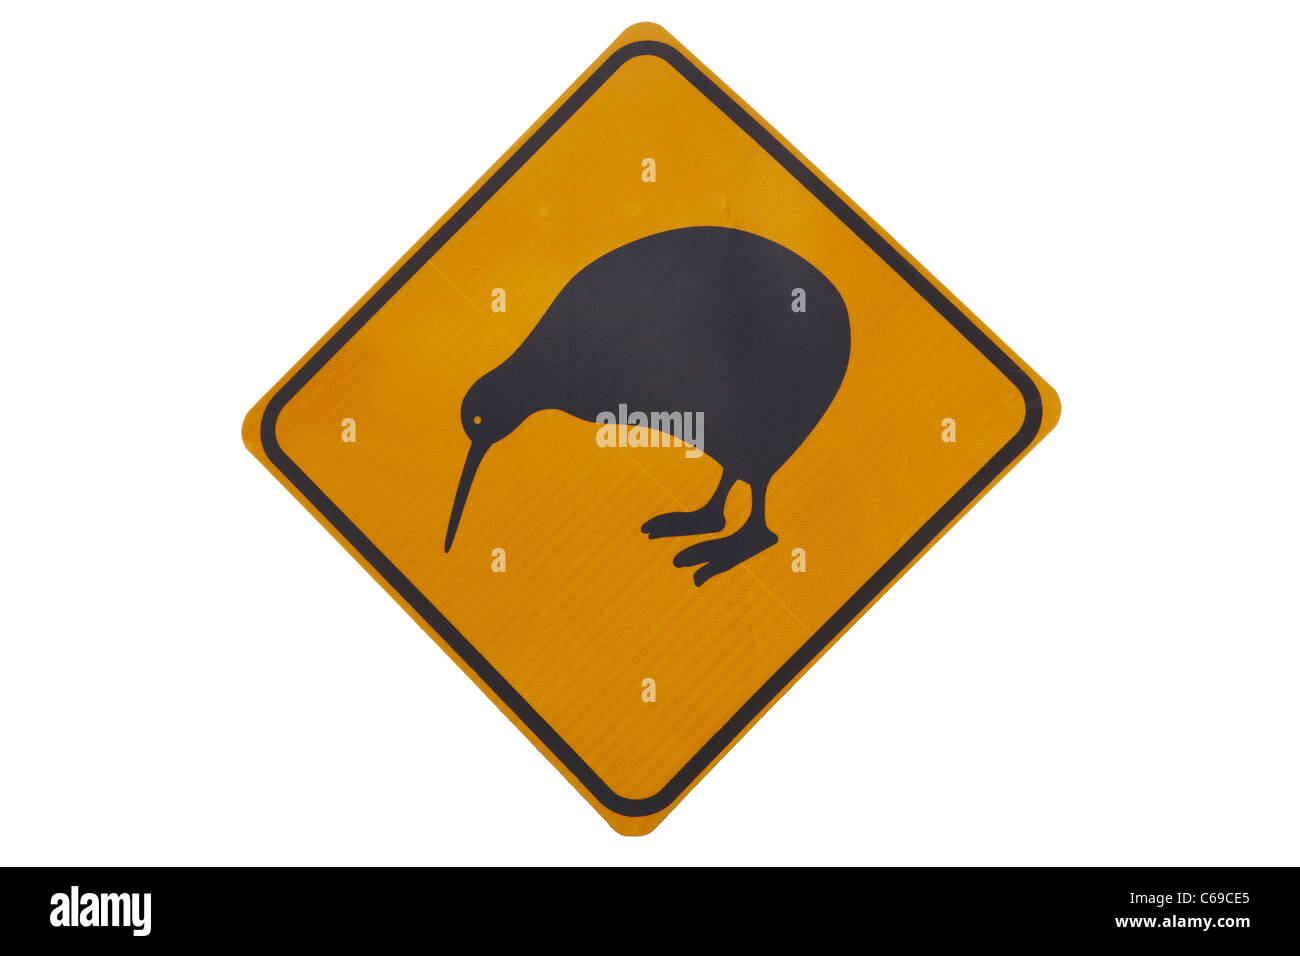 Iconici di kiwi giallo segnale di avvertimento Foto Stock